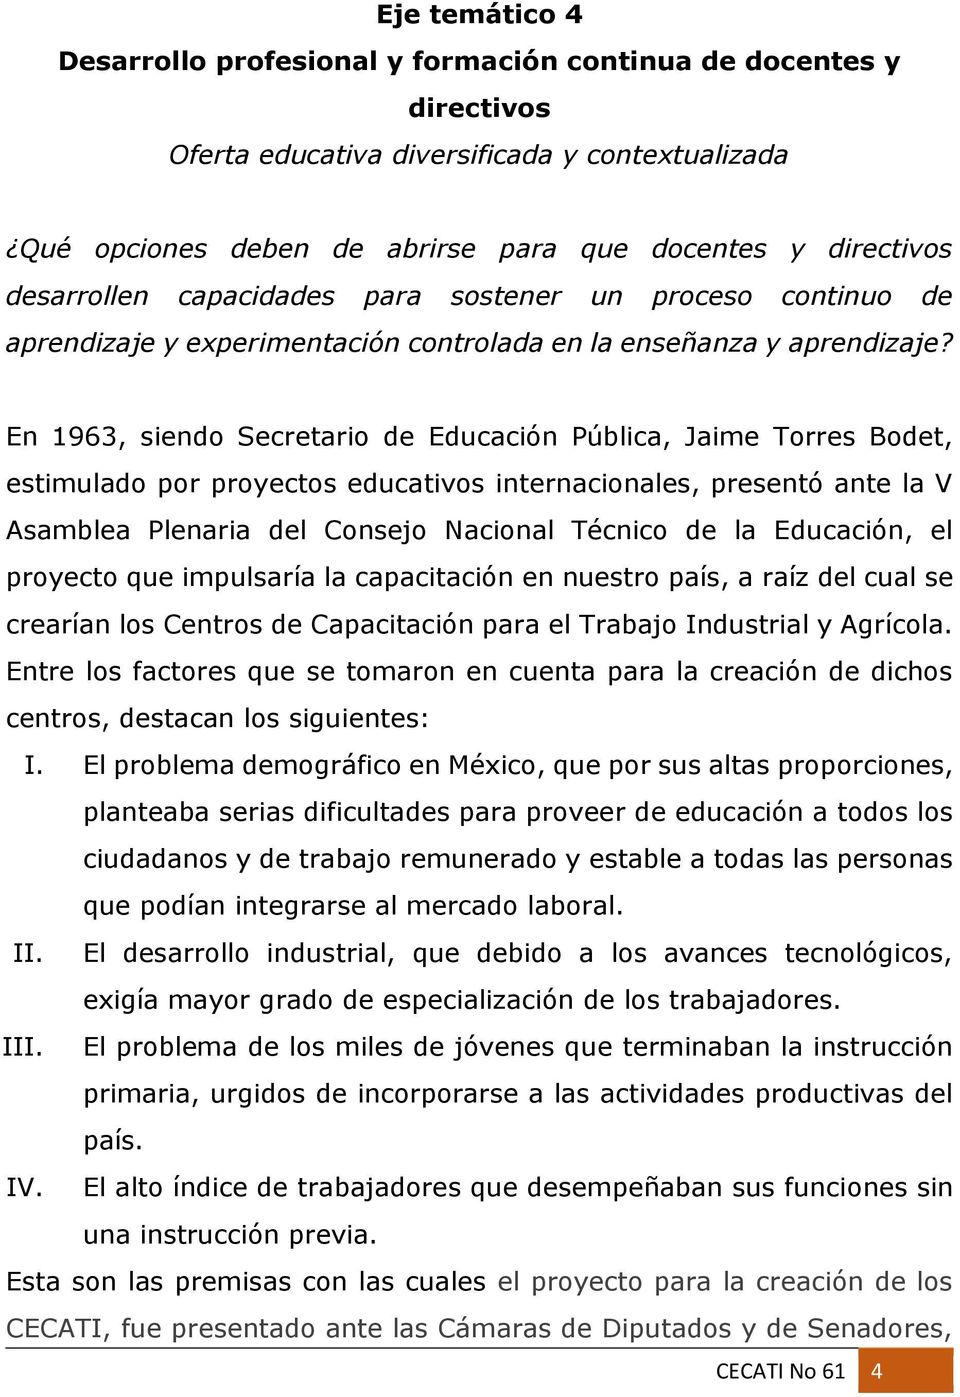 En 1963, siendo Secretario de Educación Pública, Jaime Torres Bodet, estimulado por proyectos educativos internacionales, presentó ante la V Asamblea Plenaria del Consejo Nacional Técnico de la